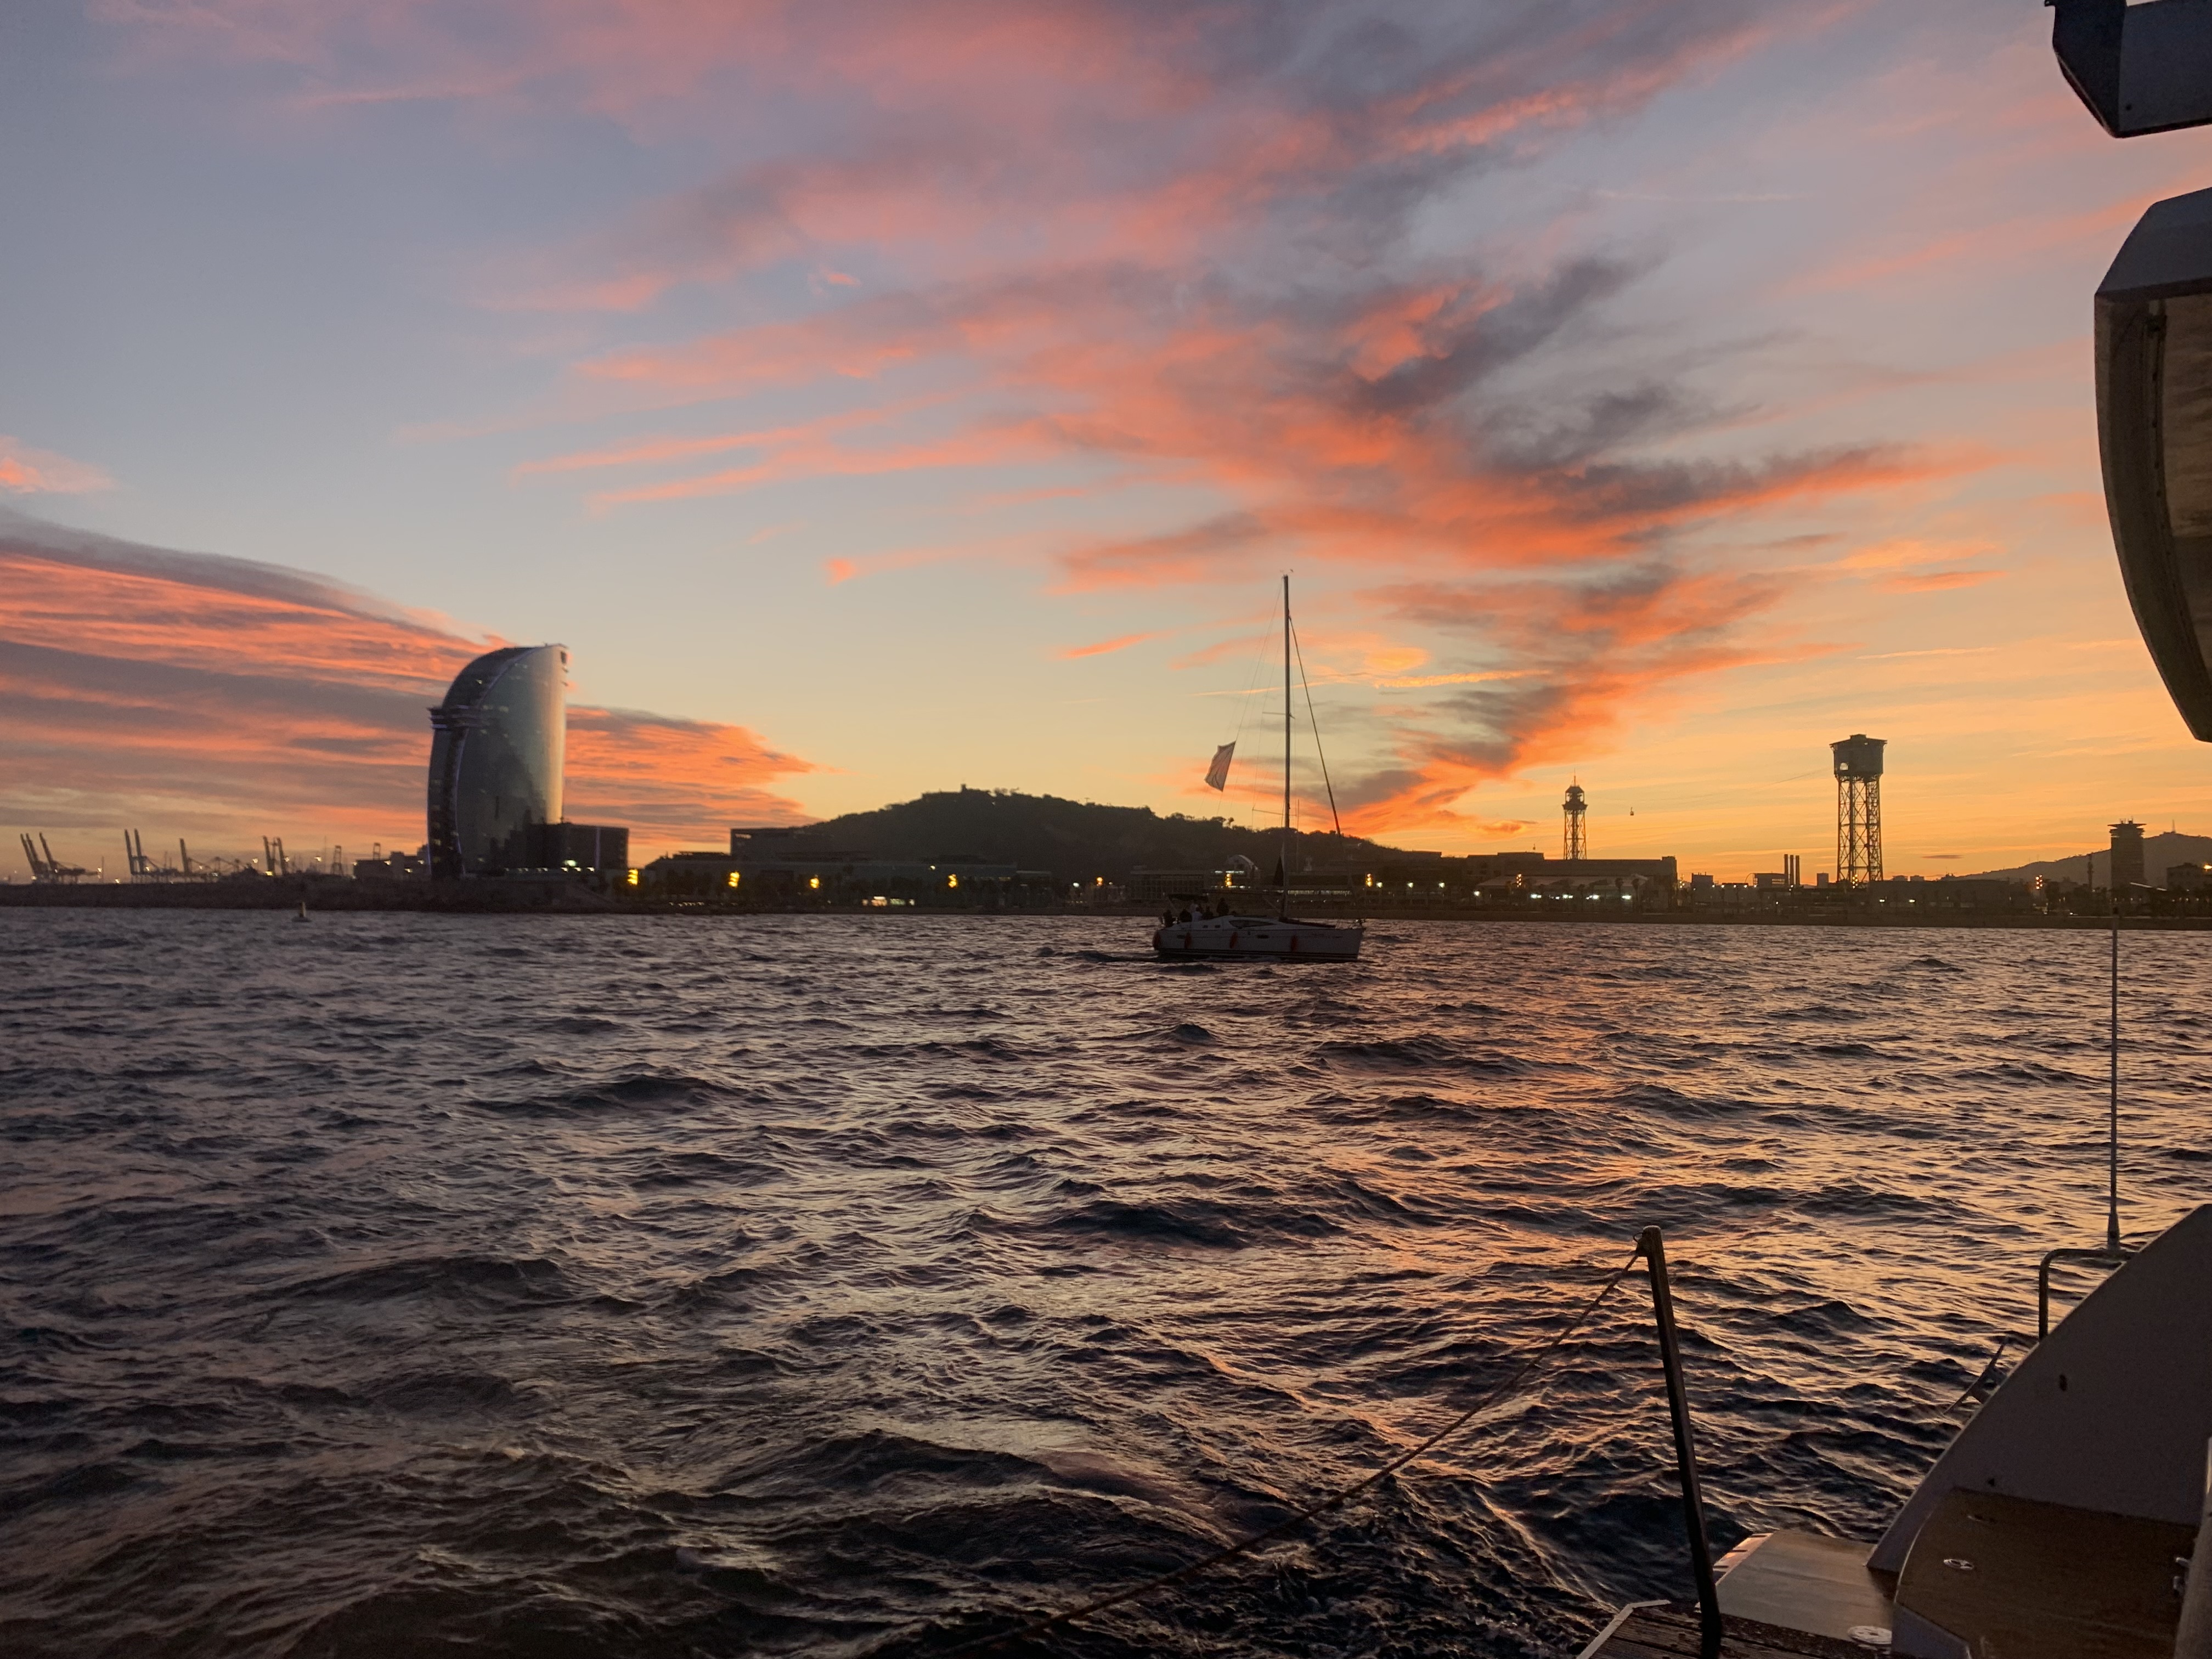 Sunset Cruise on a Catamaran in Barcelona